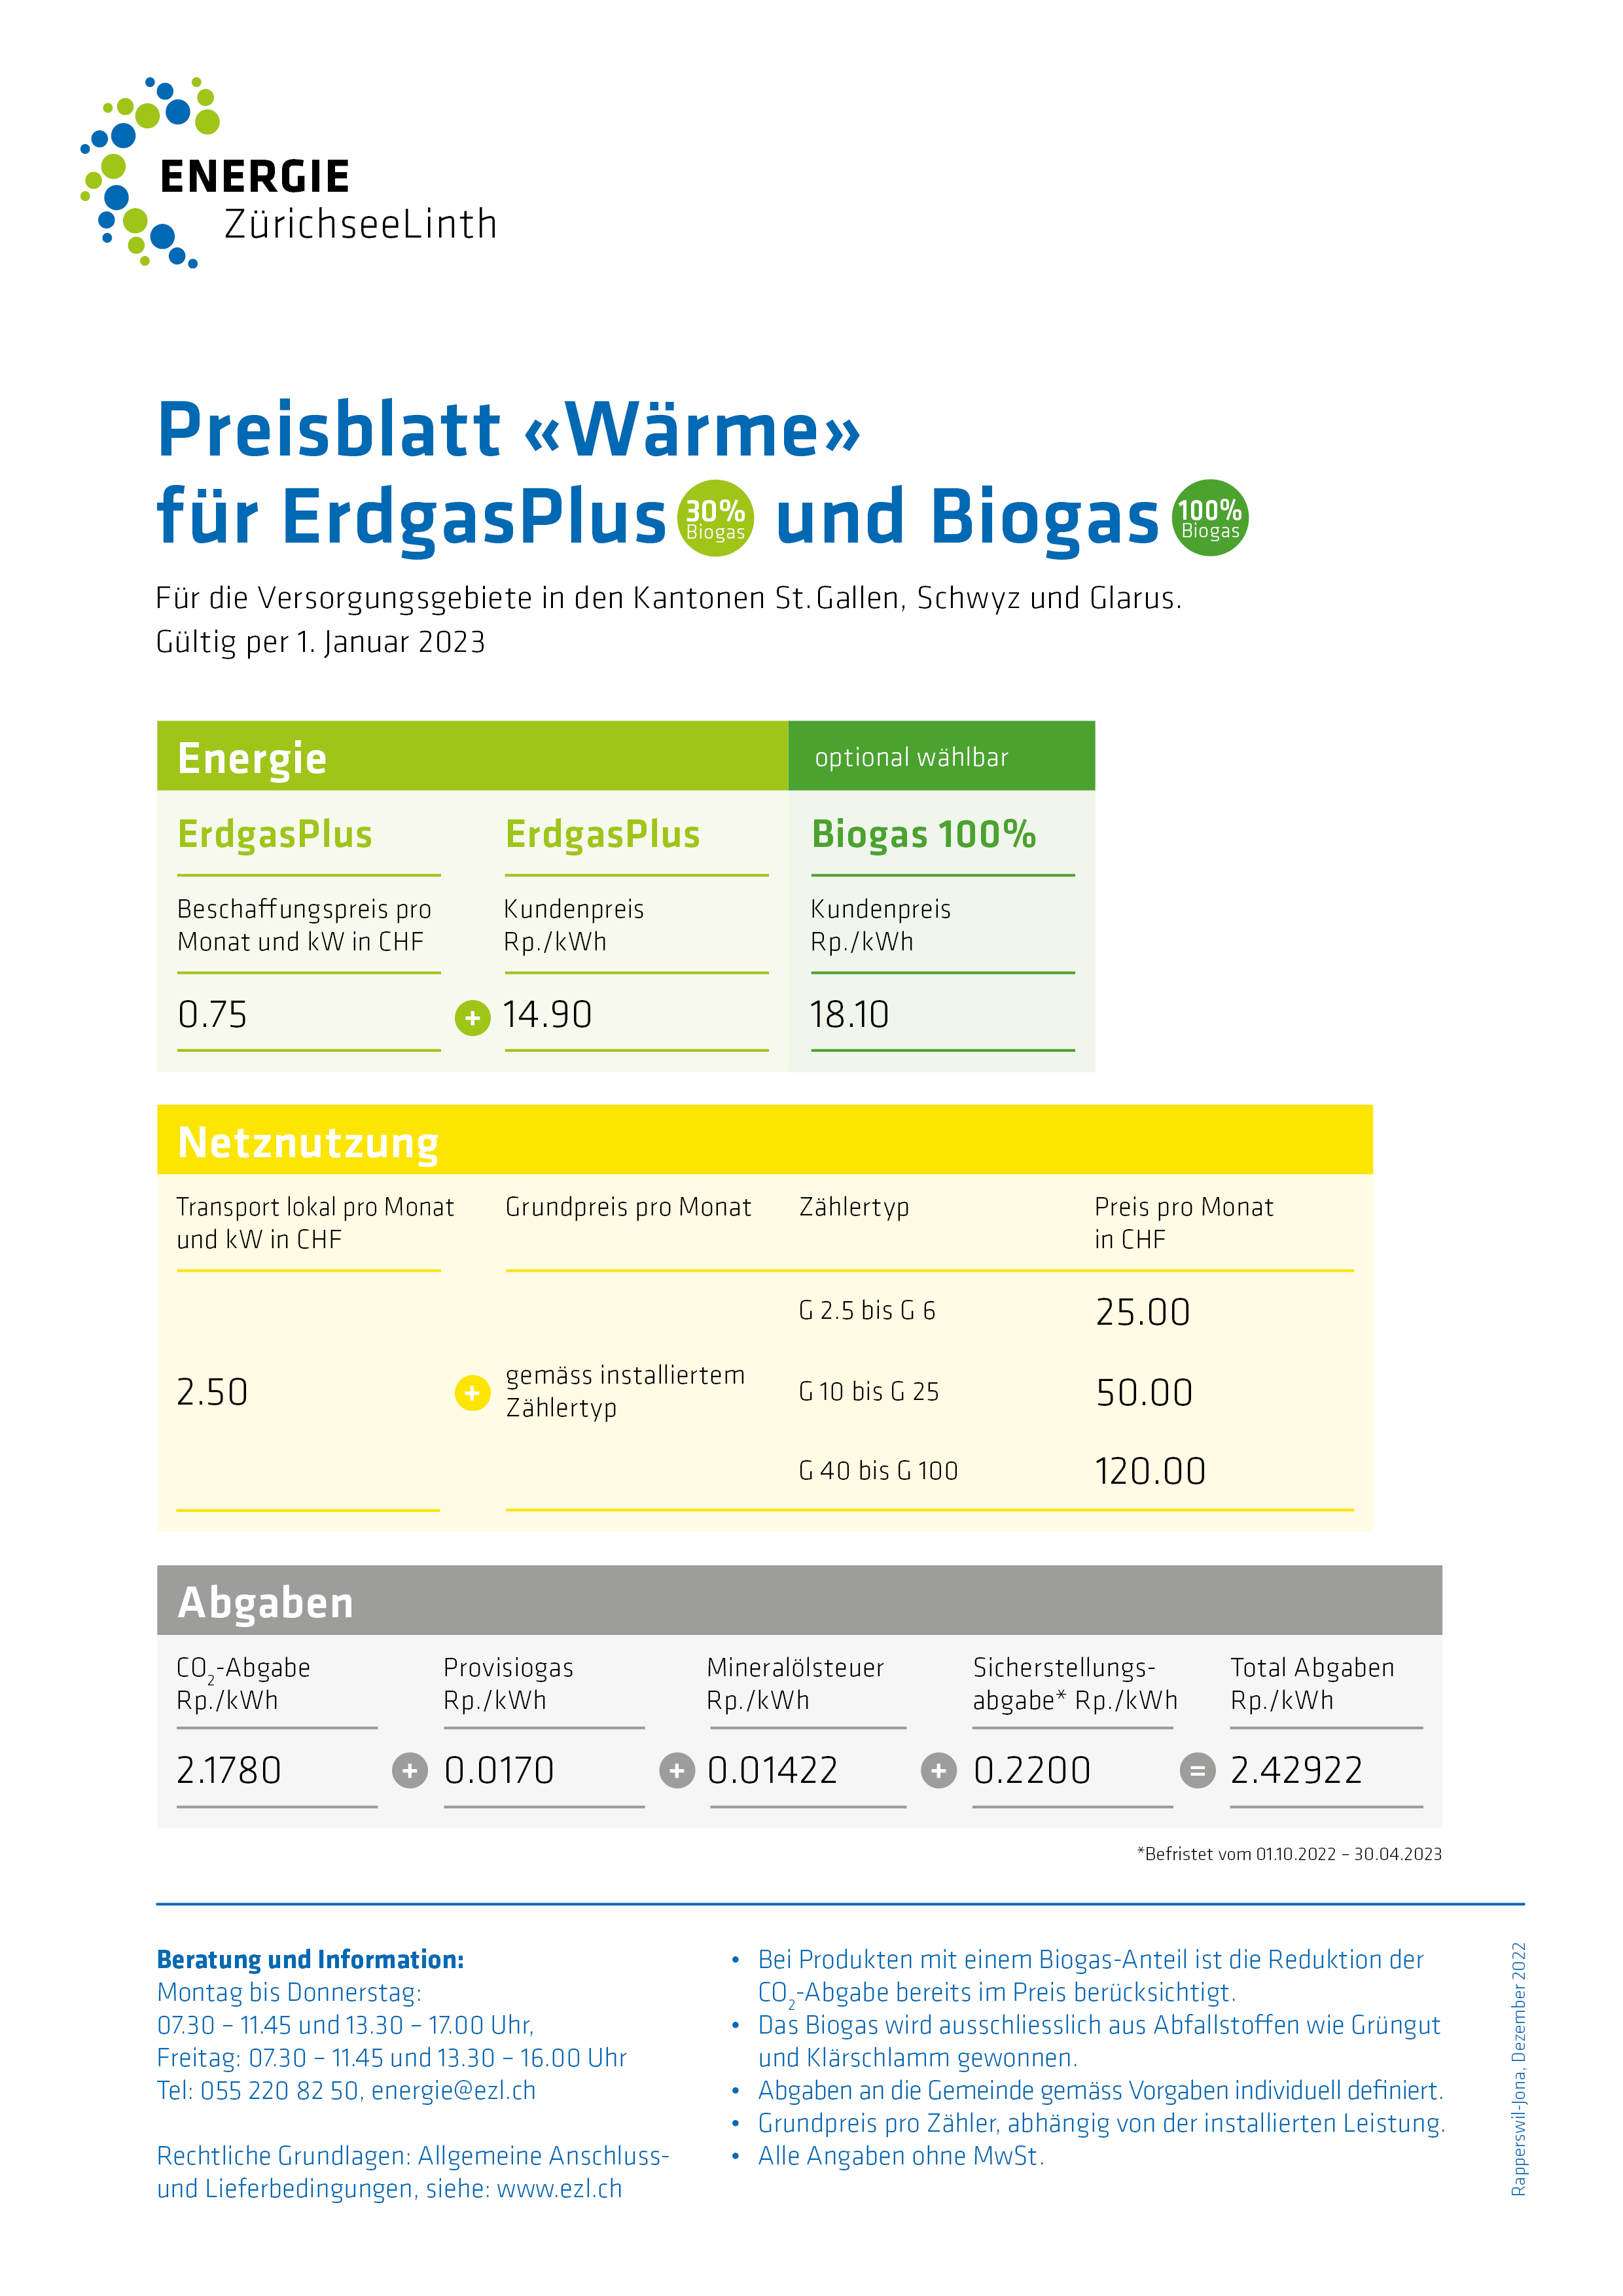 Preisblatt Waerme fuer ErdgasPlus und Biogas 